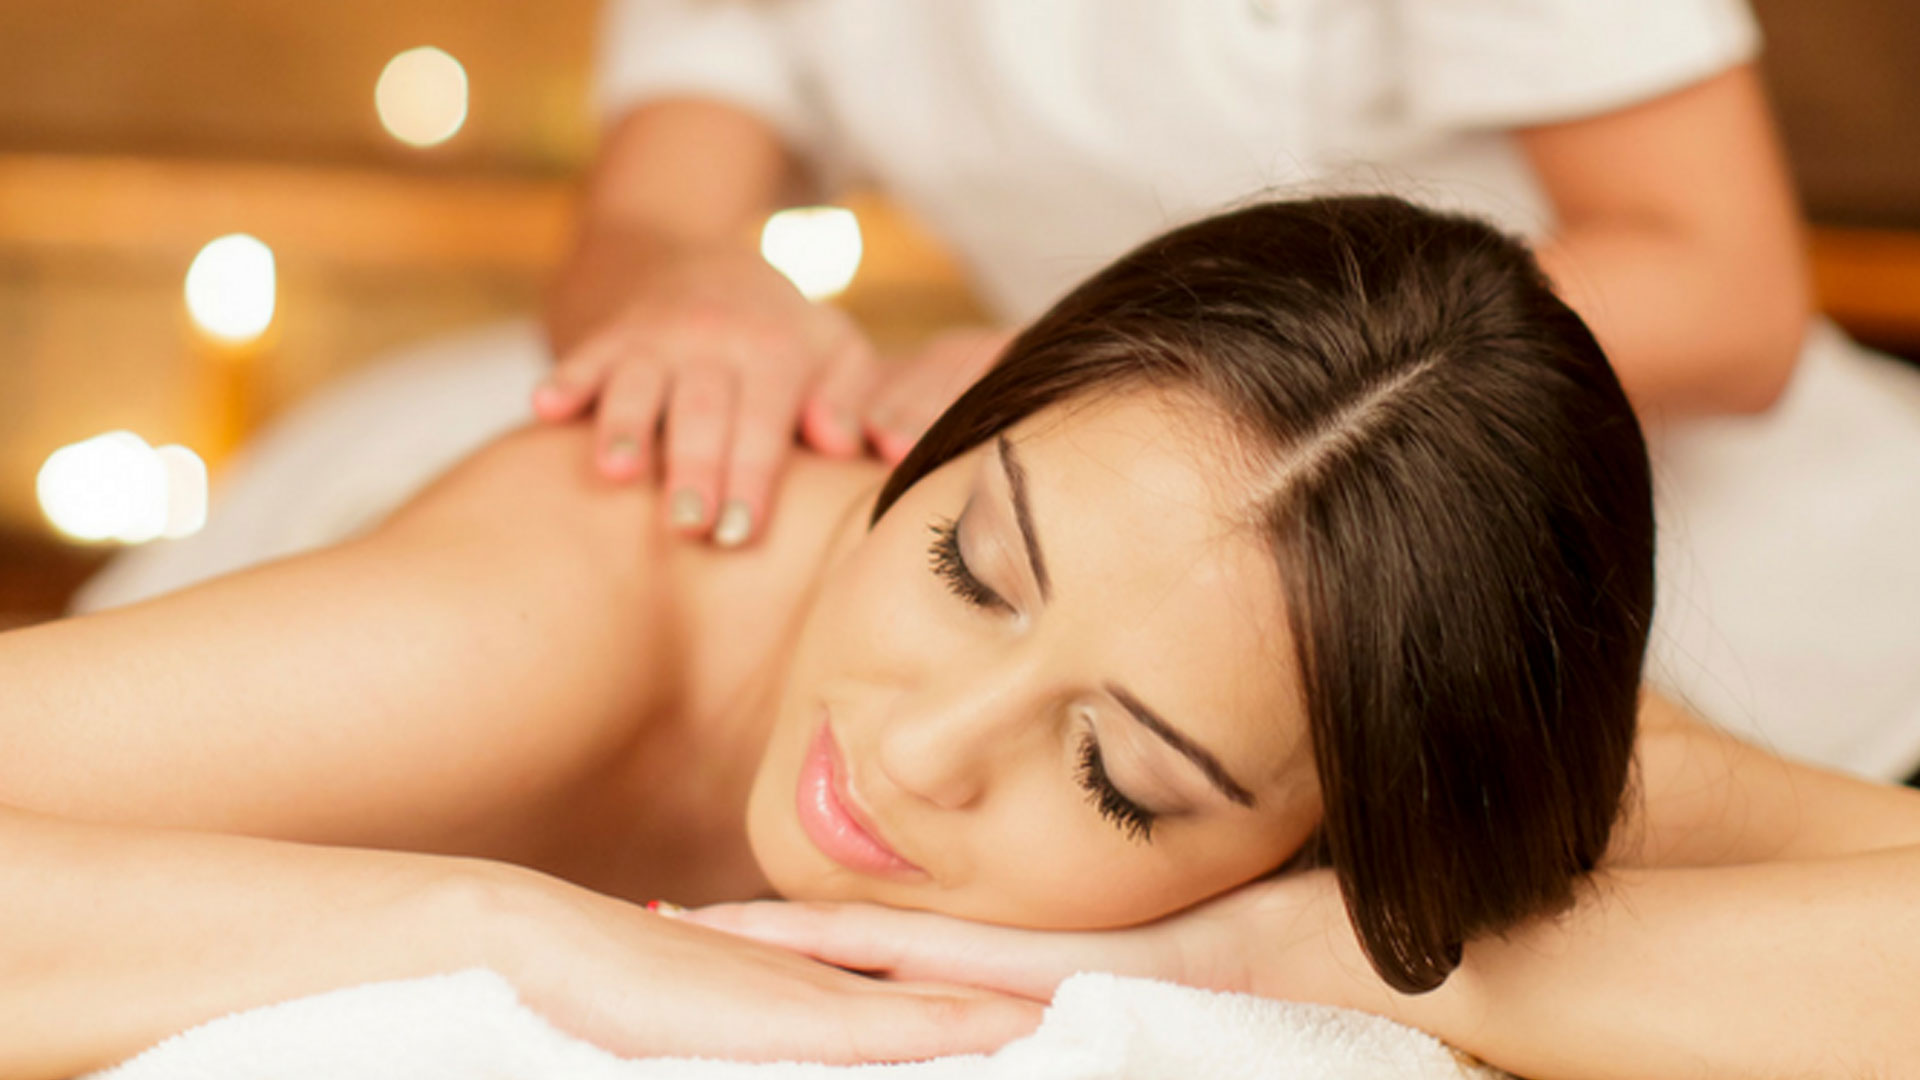 Myths of Massage Treatments